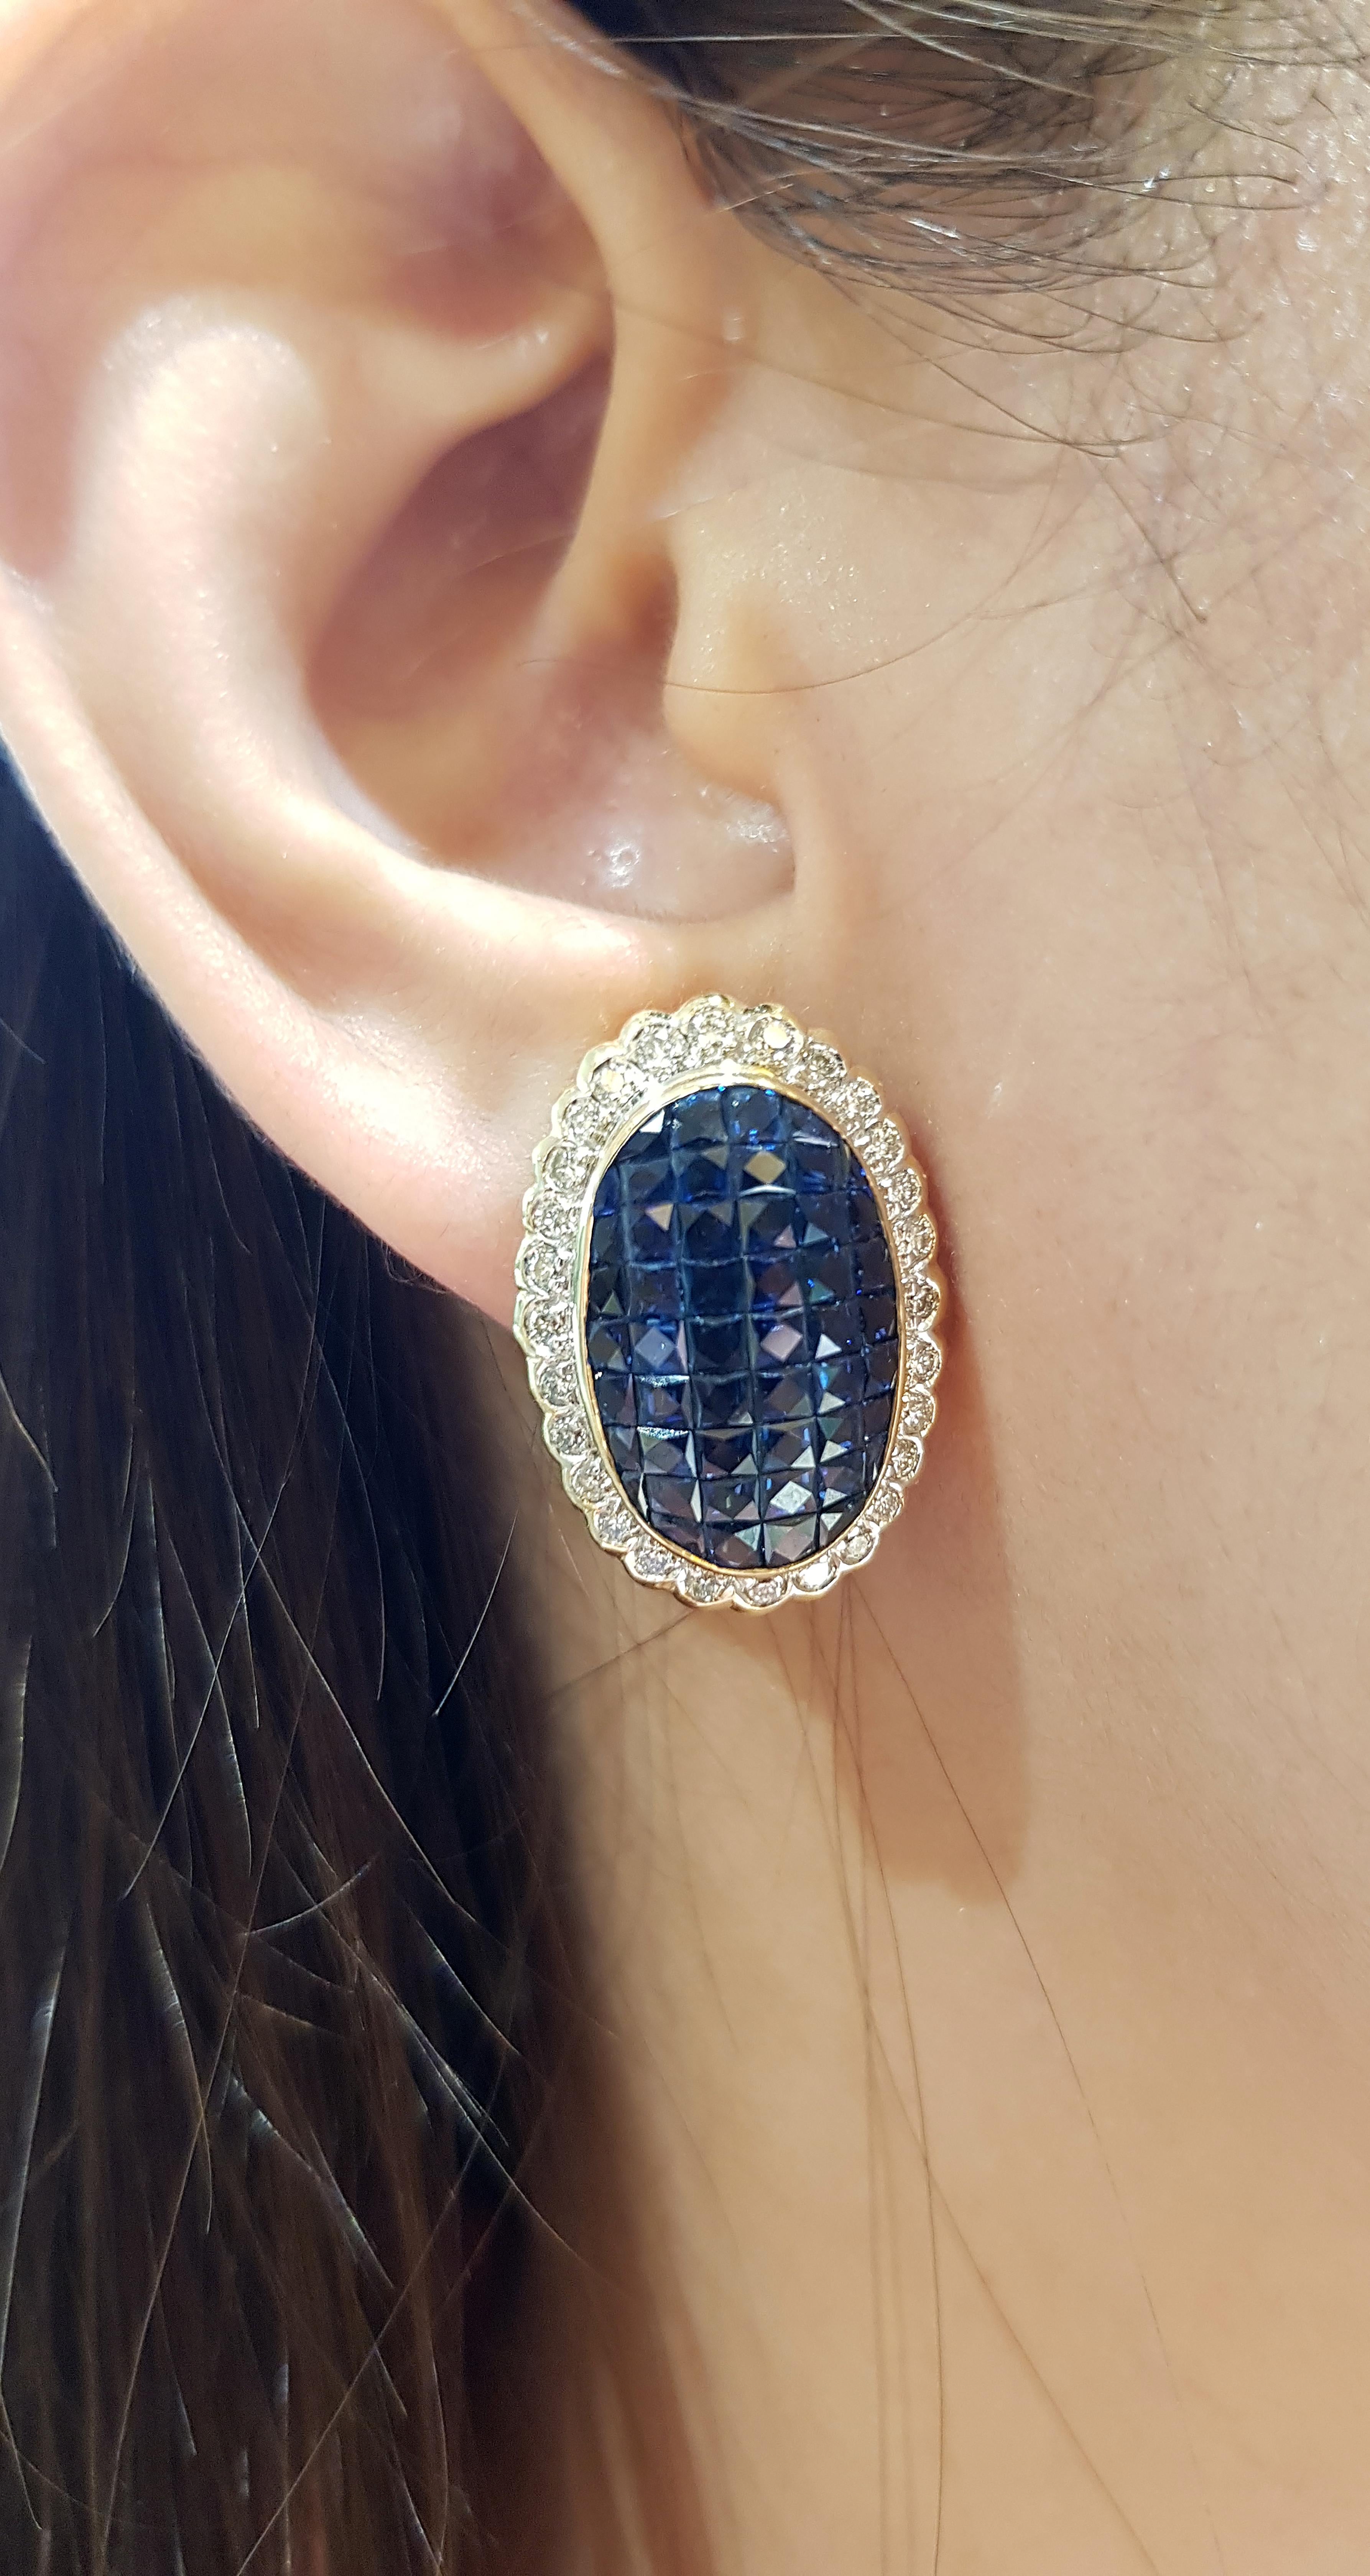 Blauer Saphir 9,09 Karat mit Diamant 0,99 Karat Ohrringe in 18 Karat Goldfassung

Breite: 1,7 cm 
Länge: 2,4 cm
Gesamtgewicht: 12,15 Gramm

